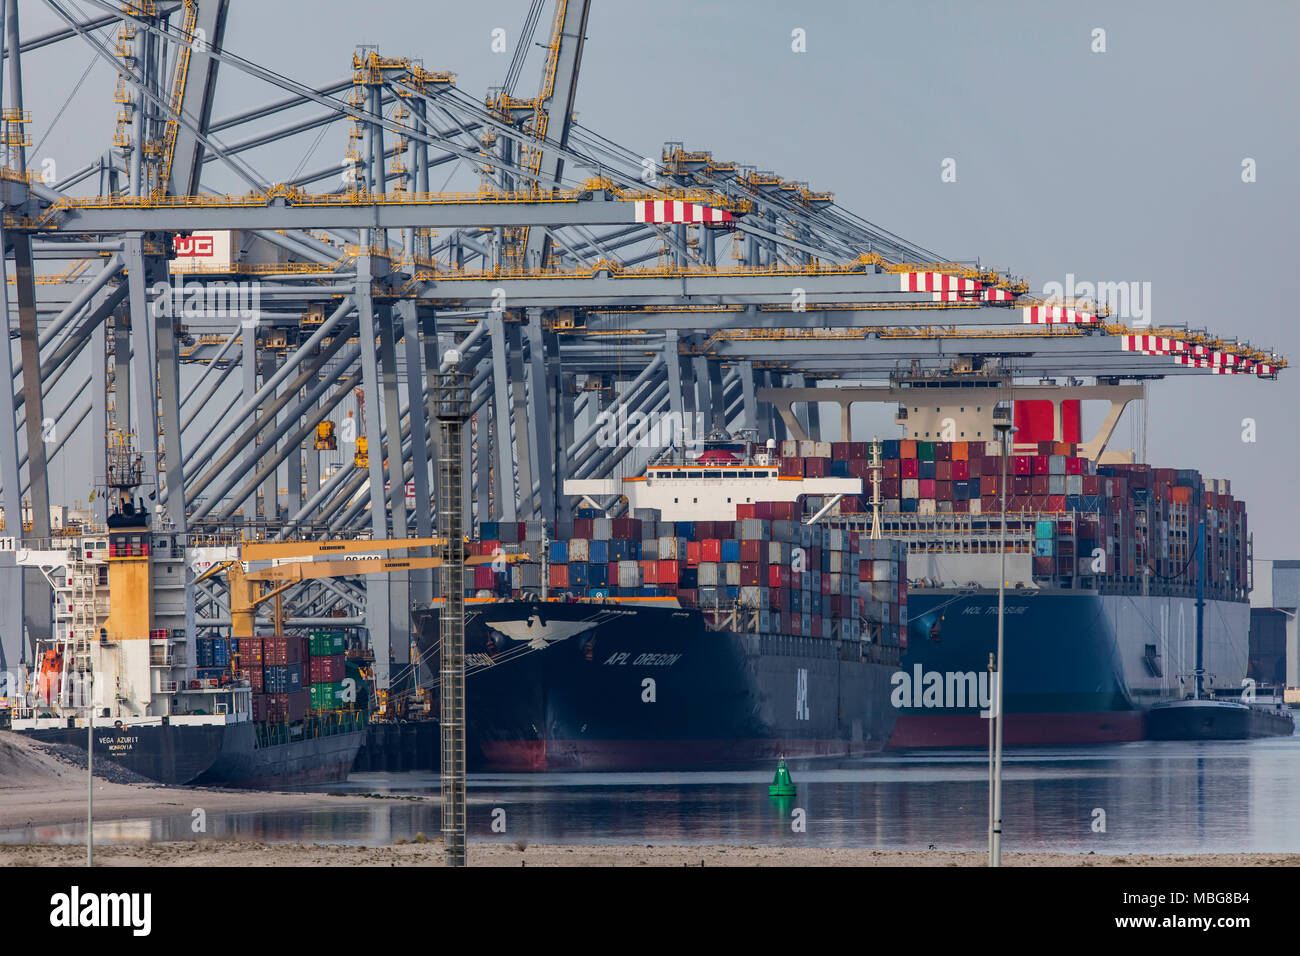 Der Hafen von Rotterdam, Niederlande, Deep-sea port Maasvlakte 2, auf einer künstlich geschaffenen Land Bereich vor der ursprünglichen Küste, Rotterdam Worl Stockfoto